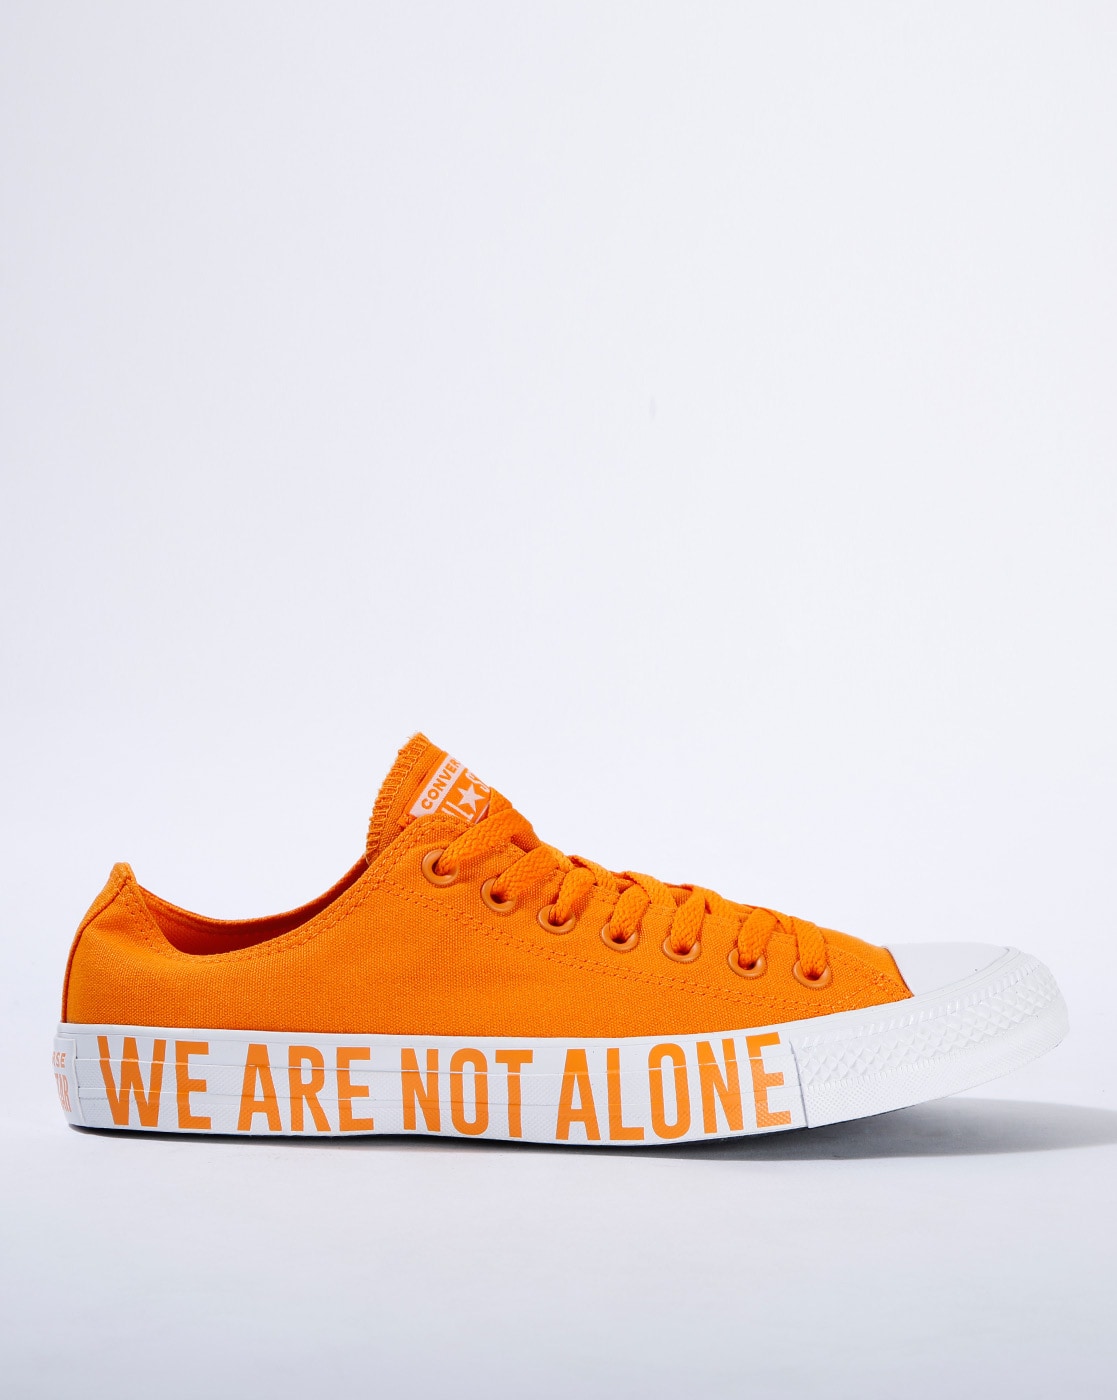 converse orange men's shoes